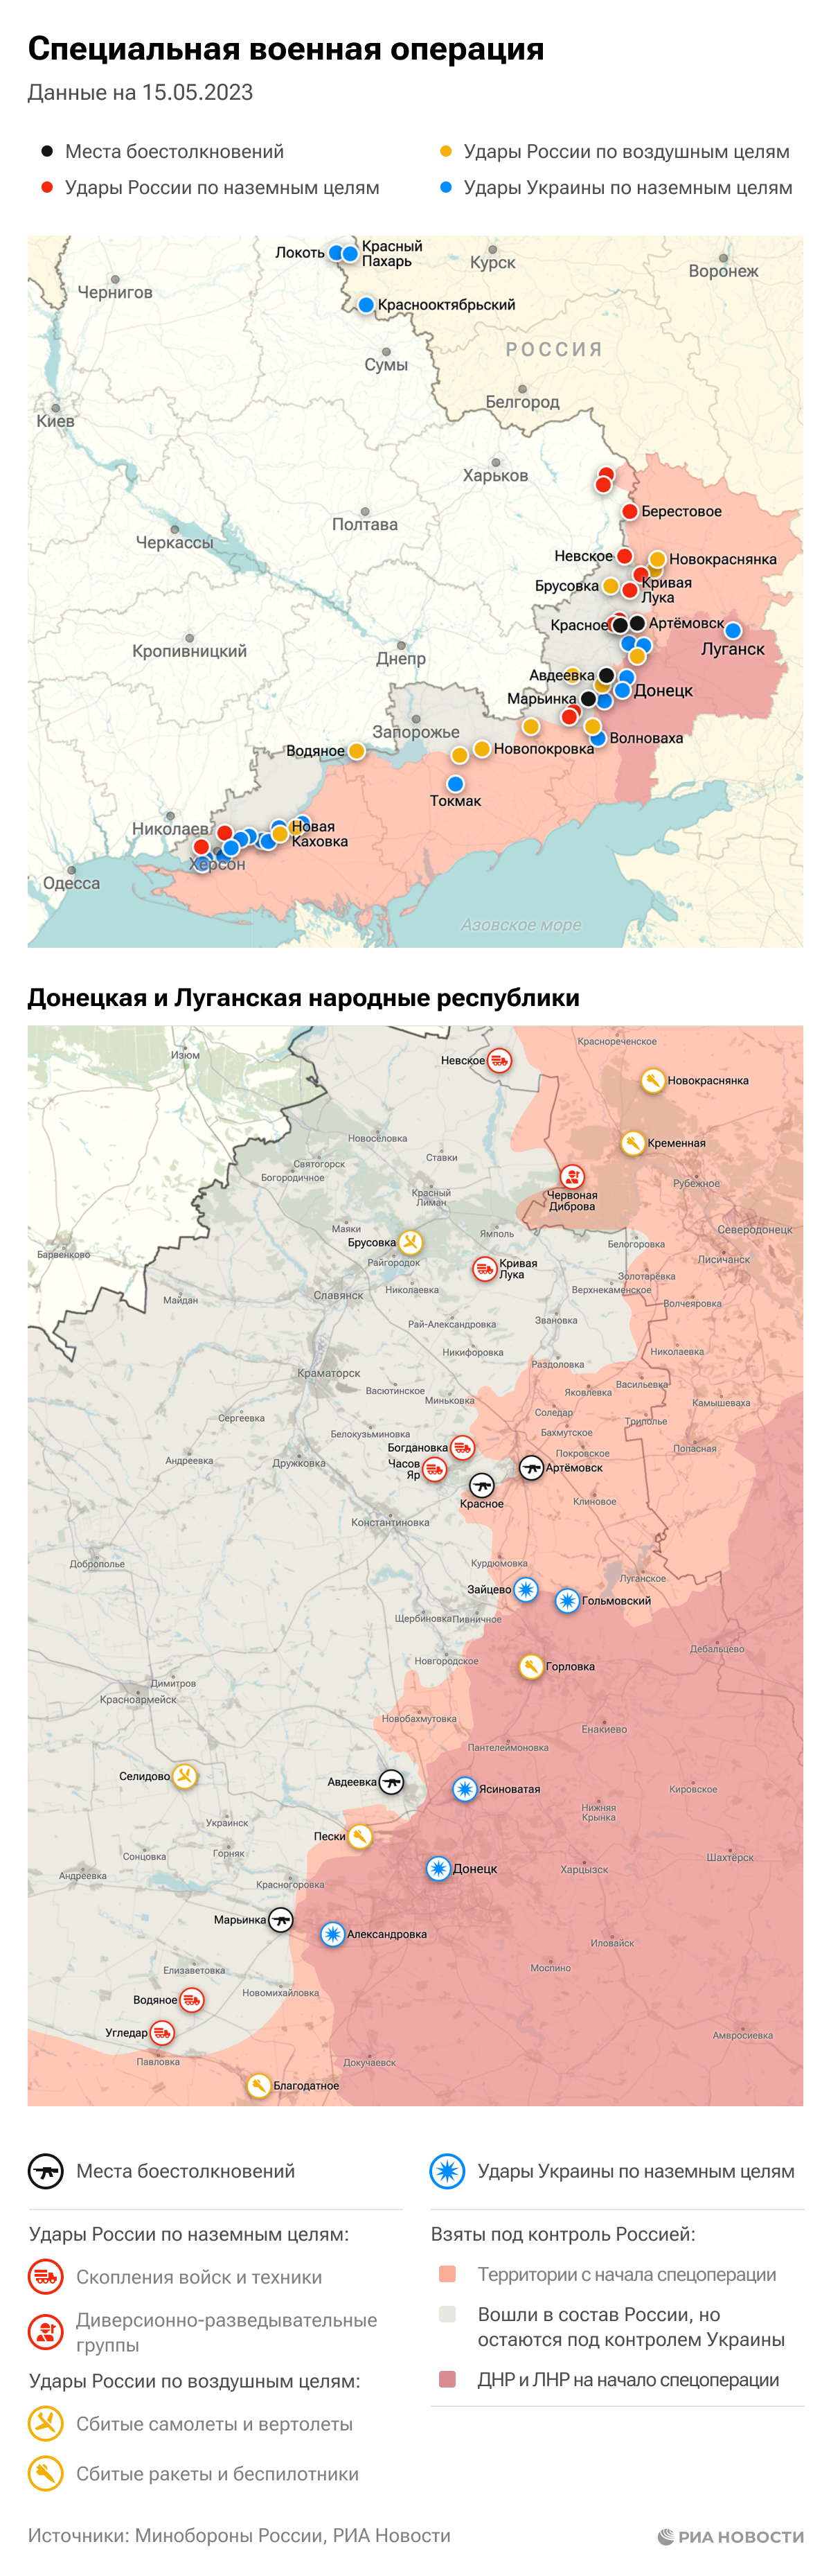 Карта спецоперации Вооруженных сил России на Украине на 15.05.2023